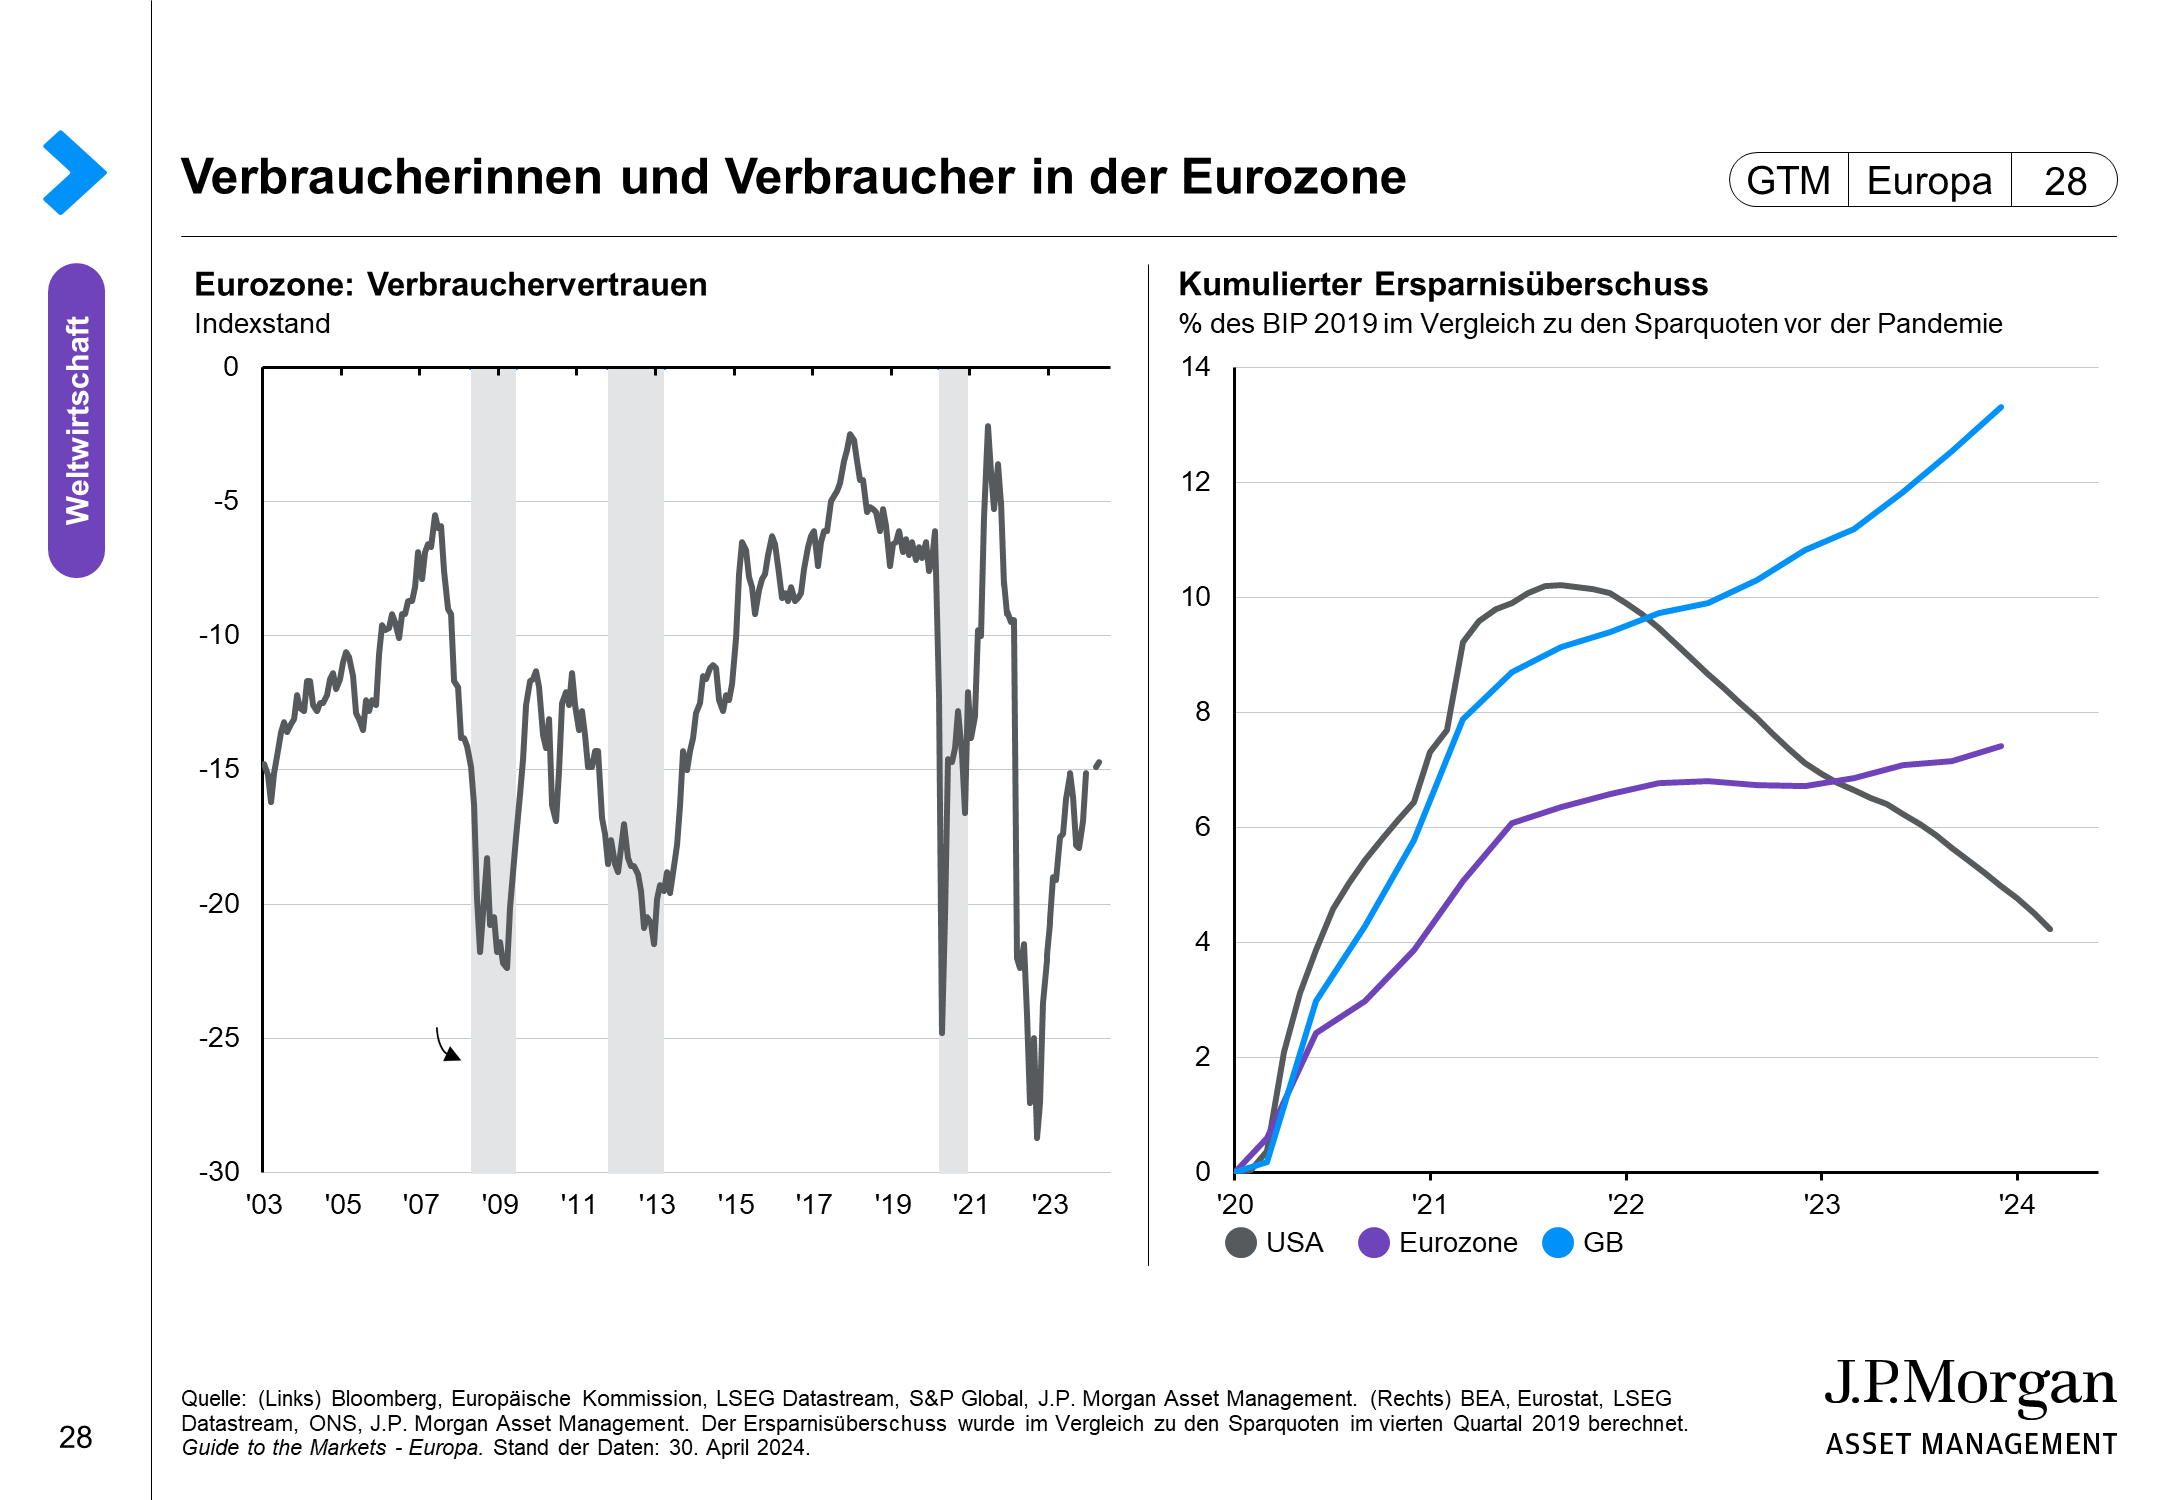 Arbeitsmarktsituation in der Eurozone